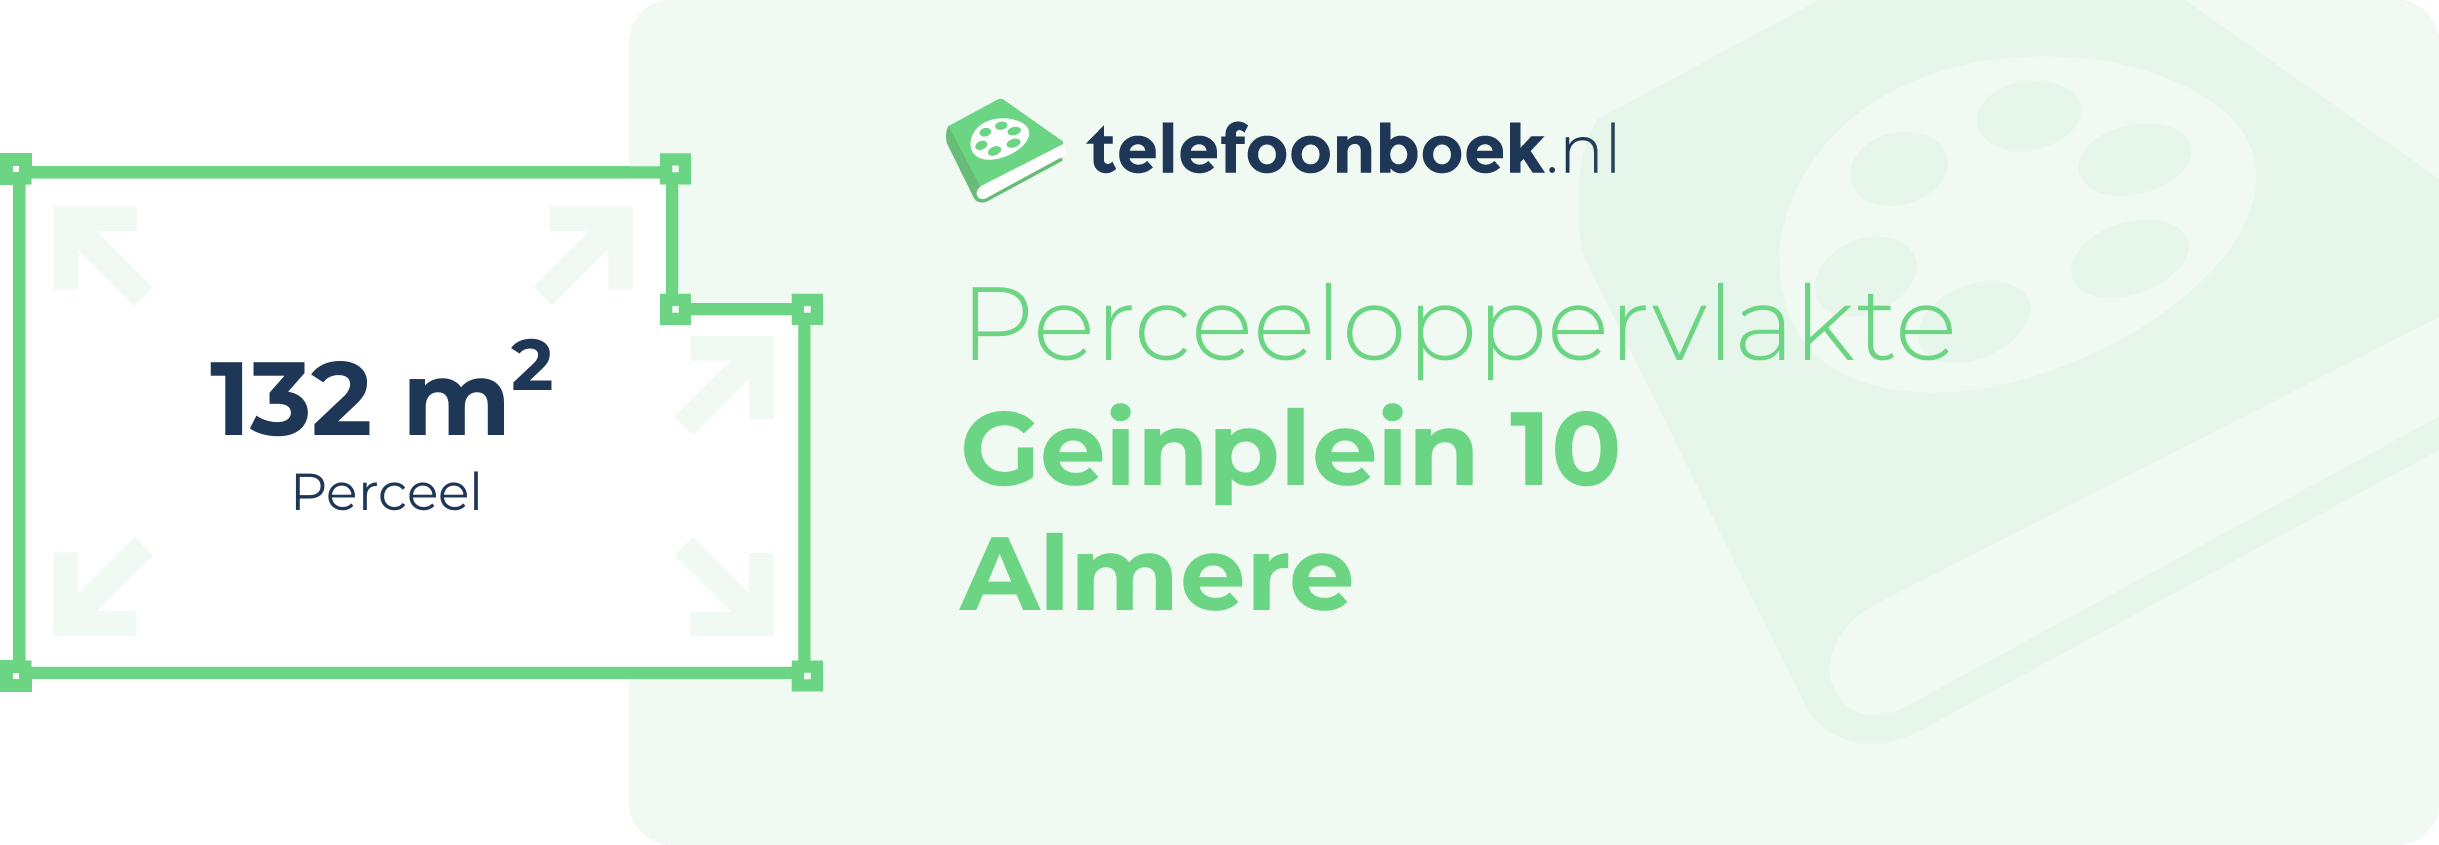 Perceeloppervlakte Geinplein 10 Almere